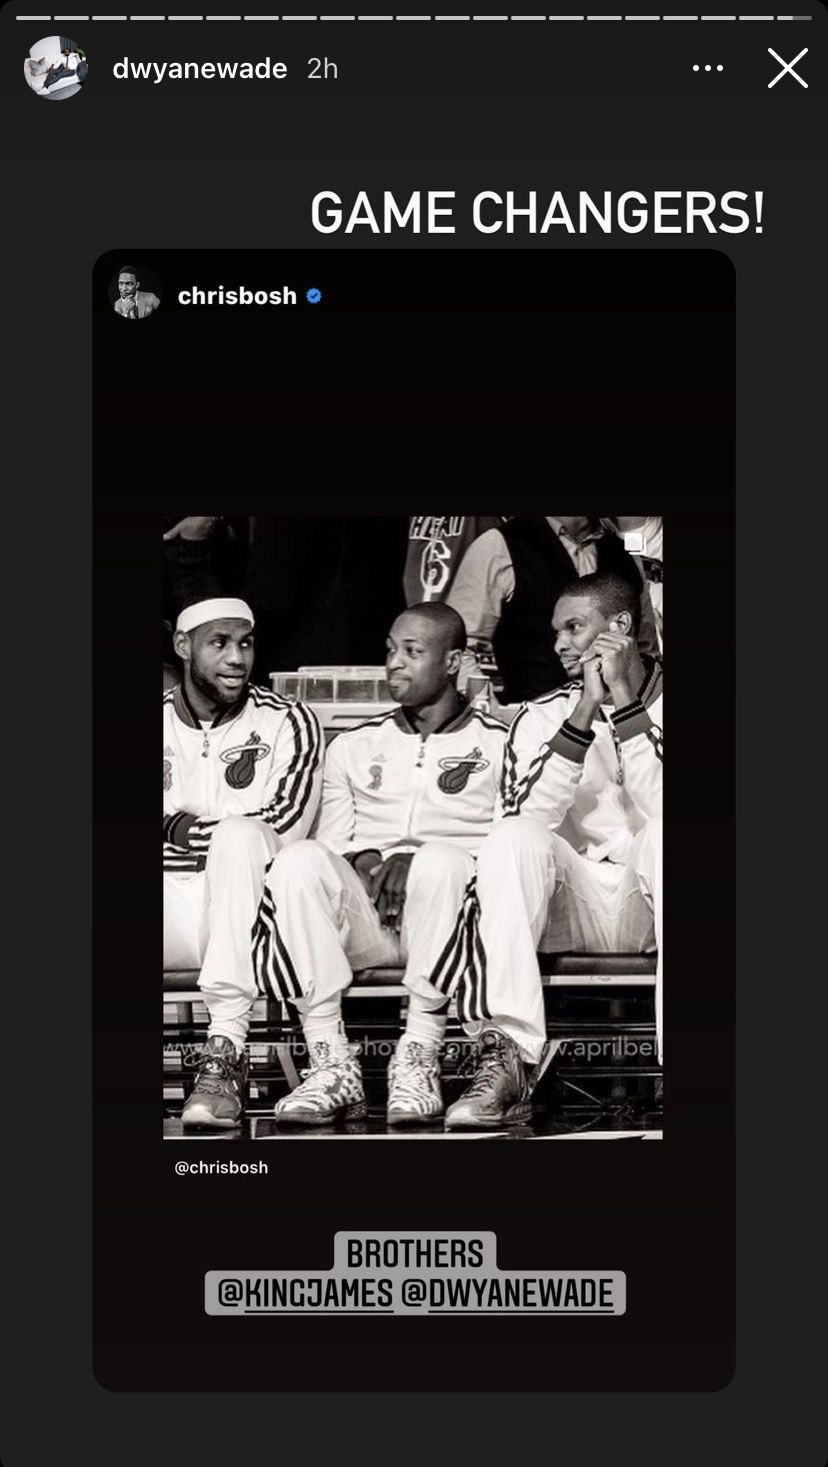 Dwyane Wade, Chris Bosh and LeBron James